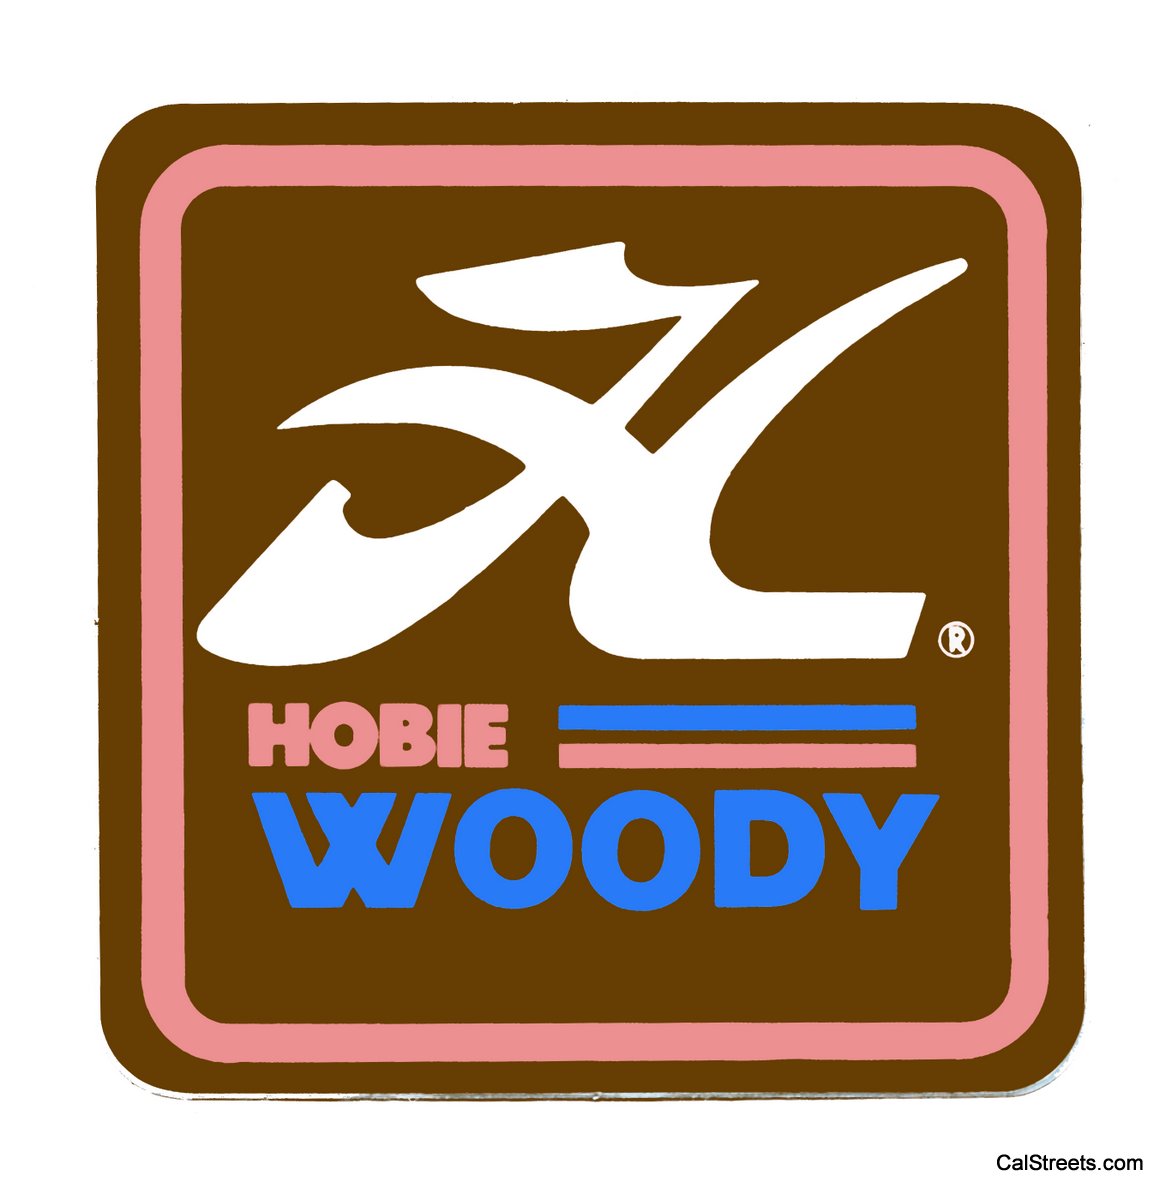 Hobie-Woody-HSQ-RFX-Wood1.jpg